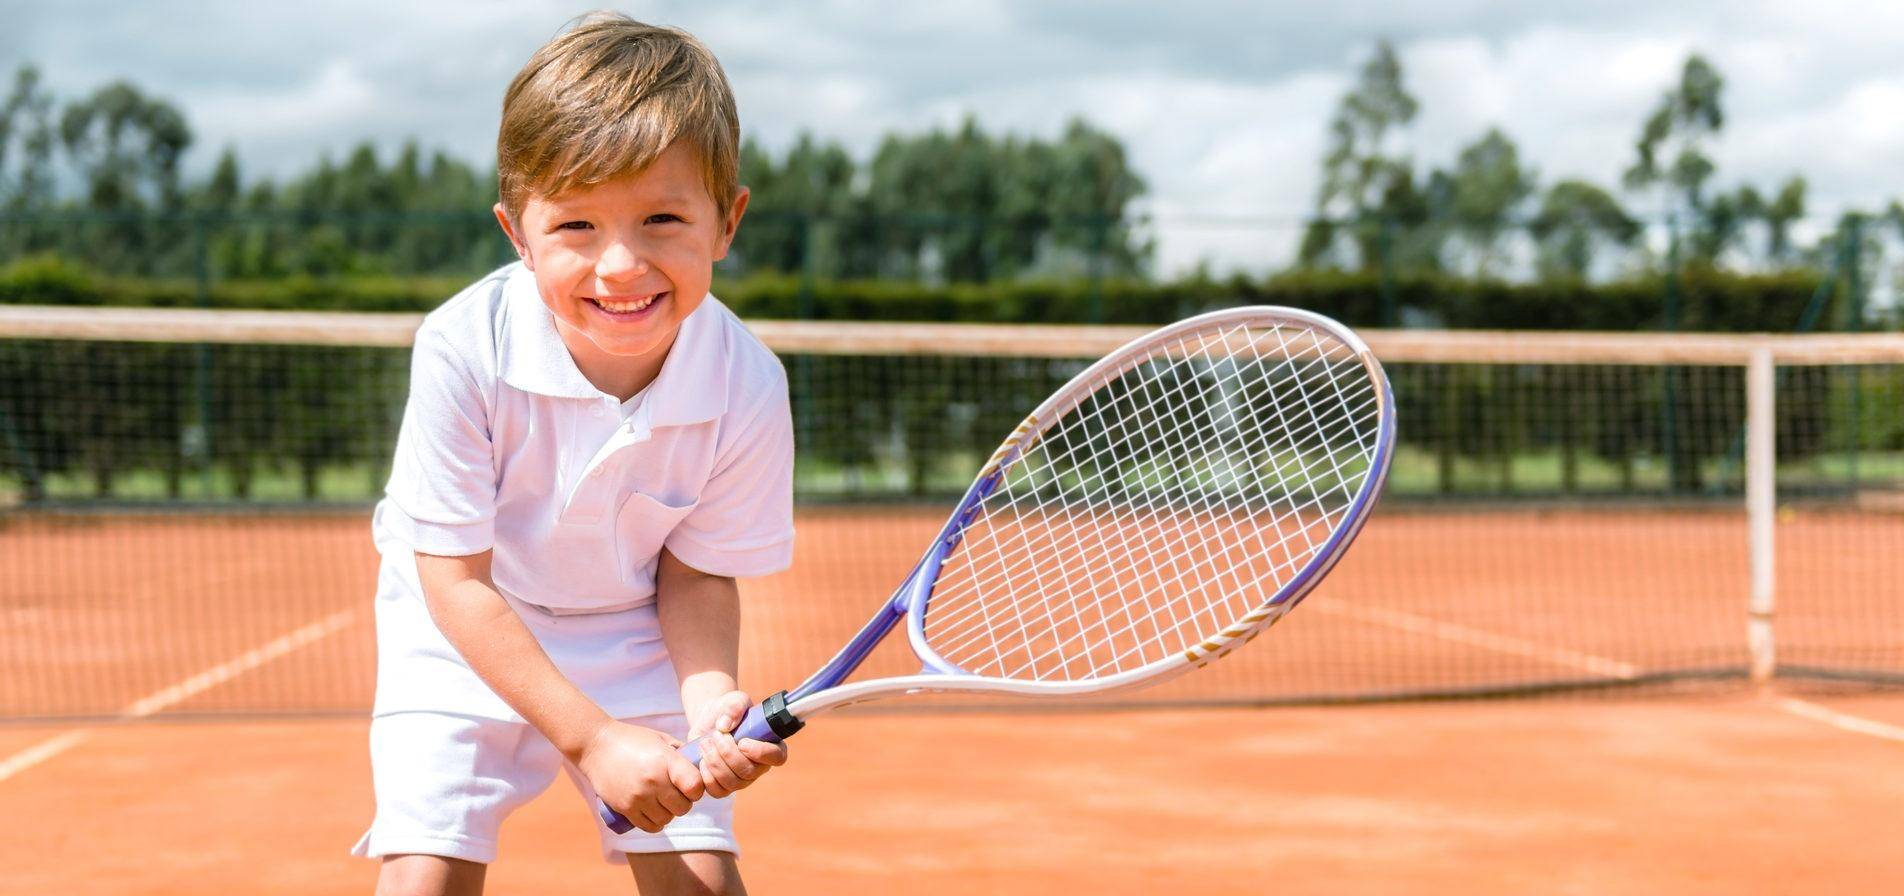 Секции большого тенниса детей. что нужно знать родителям? советы родителям